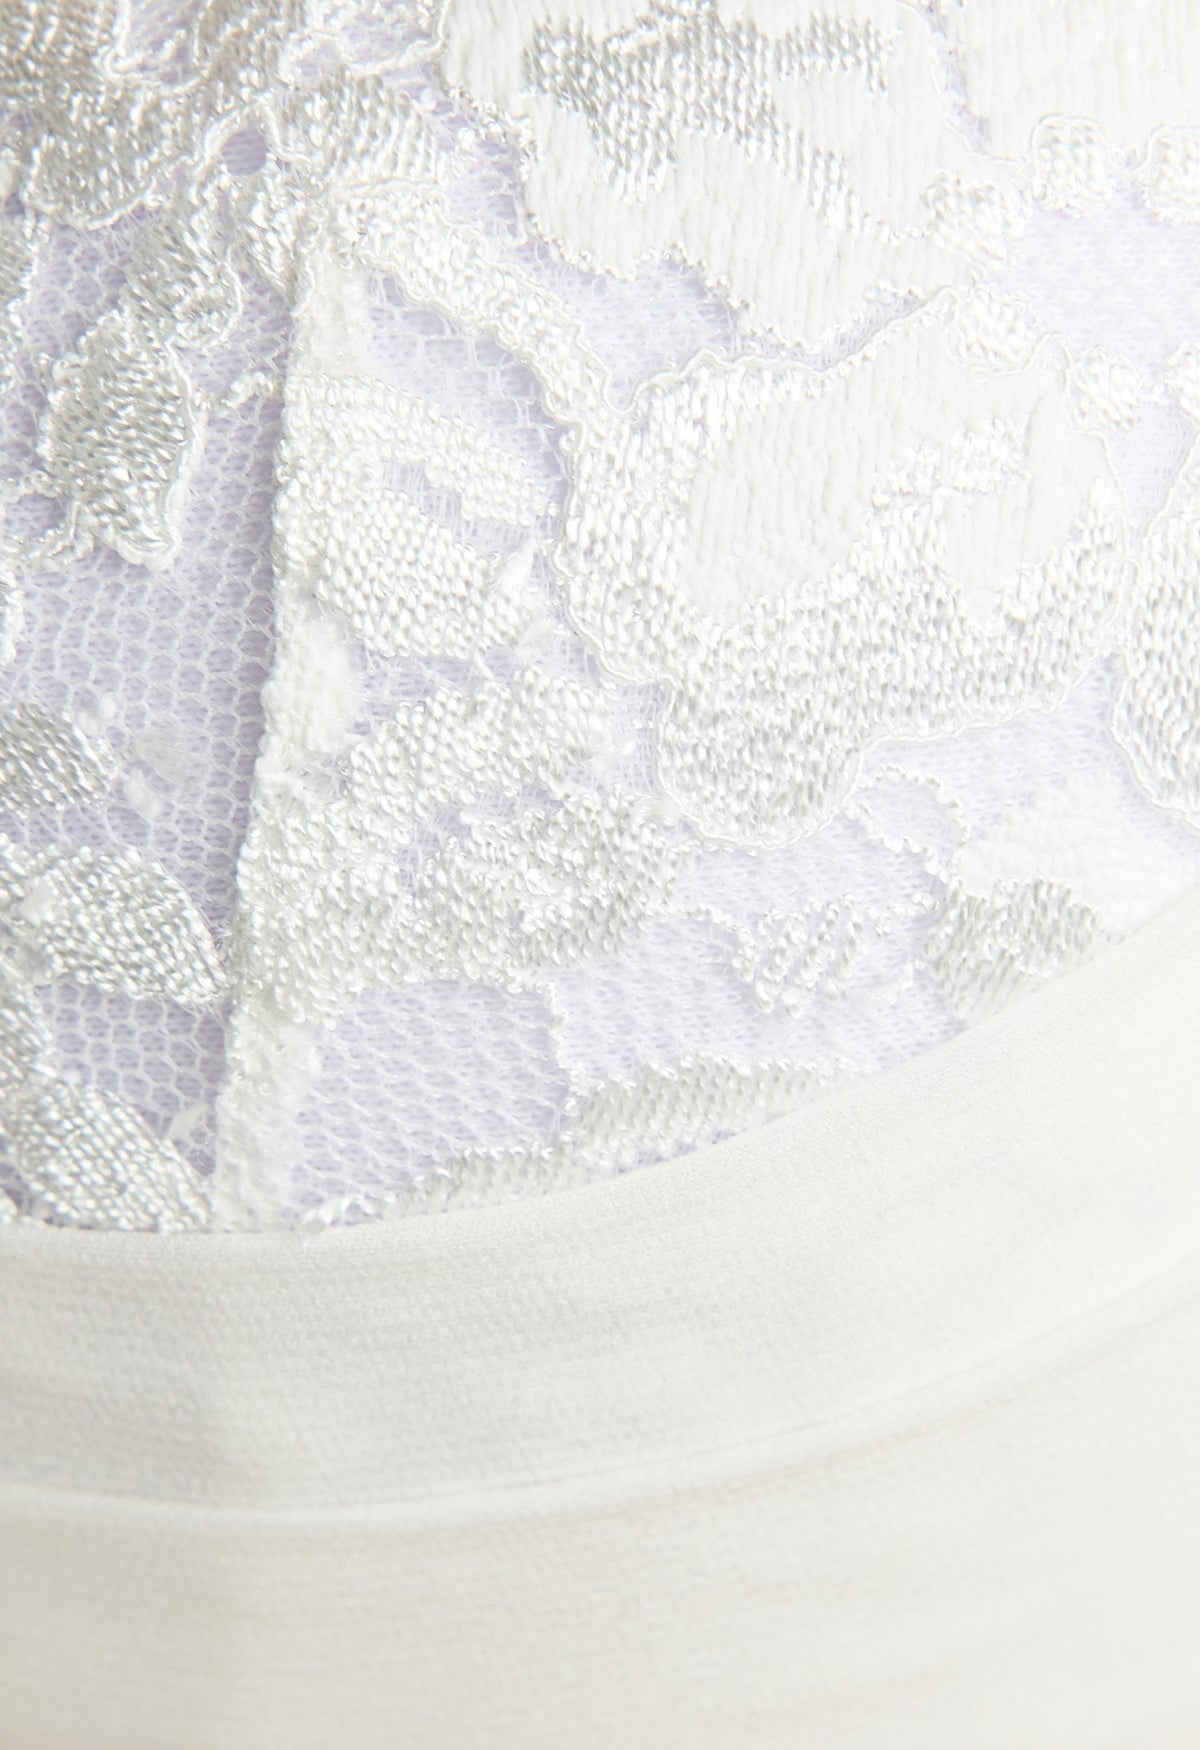 Underwired bra in off-white embroidered tulle - La Perla - Russia